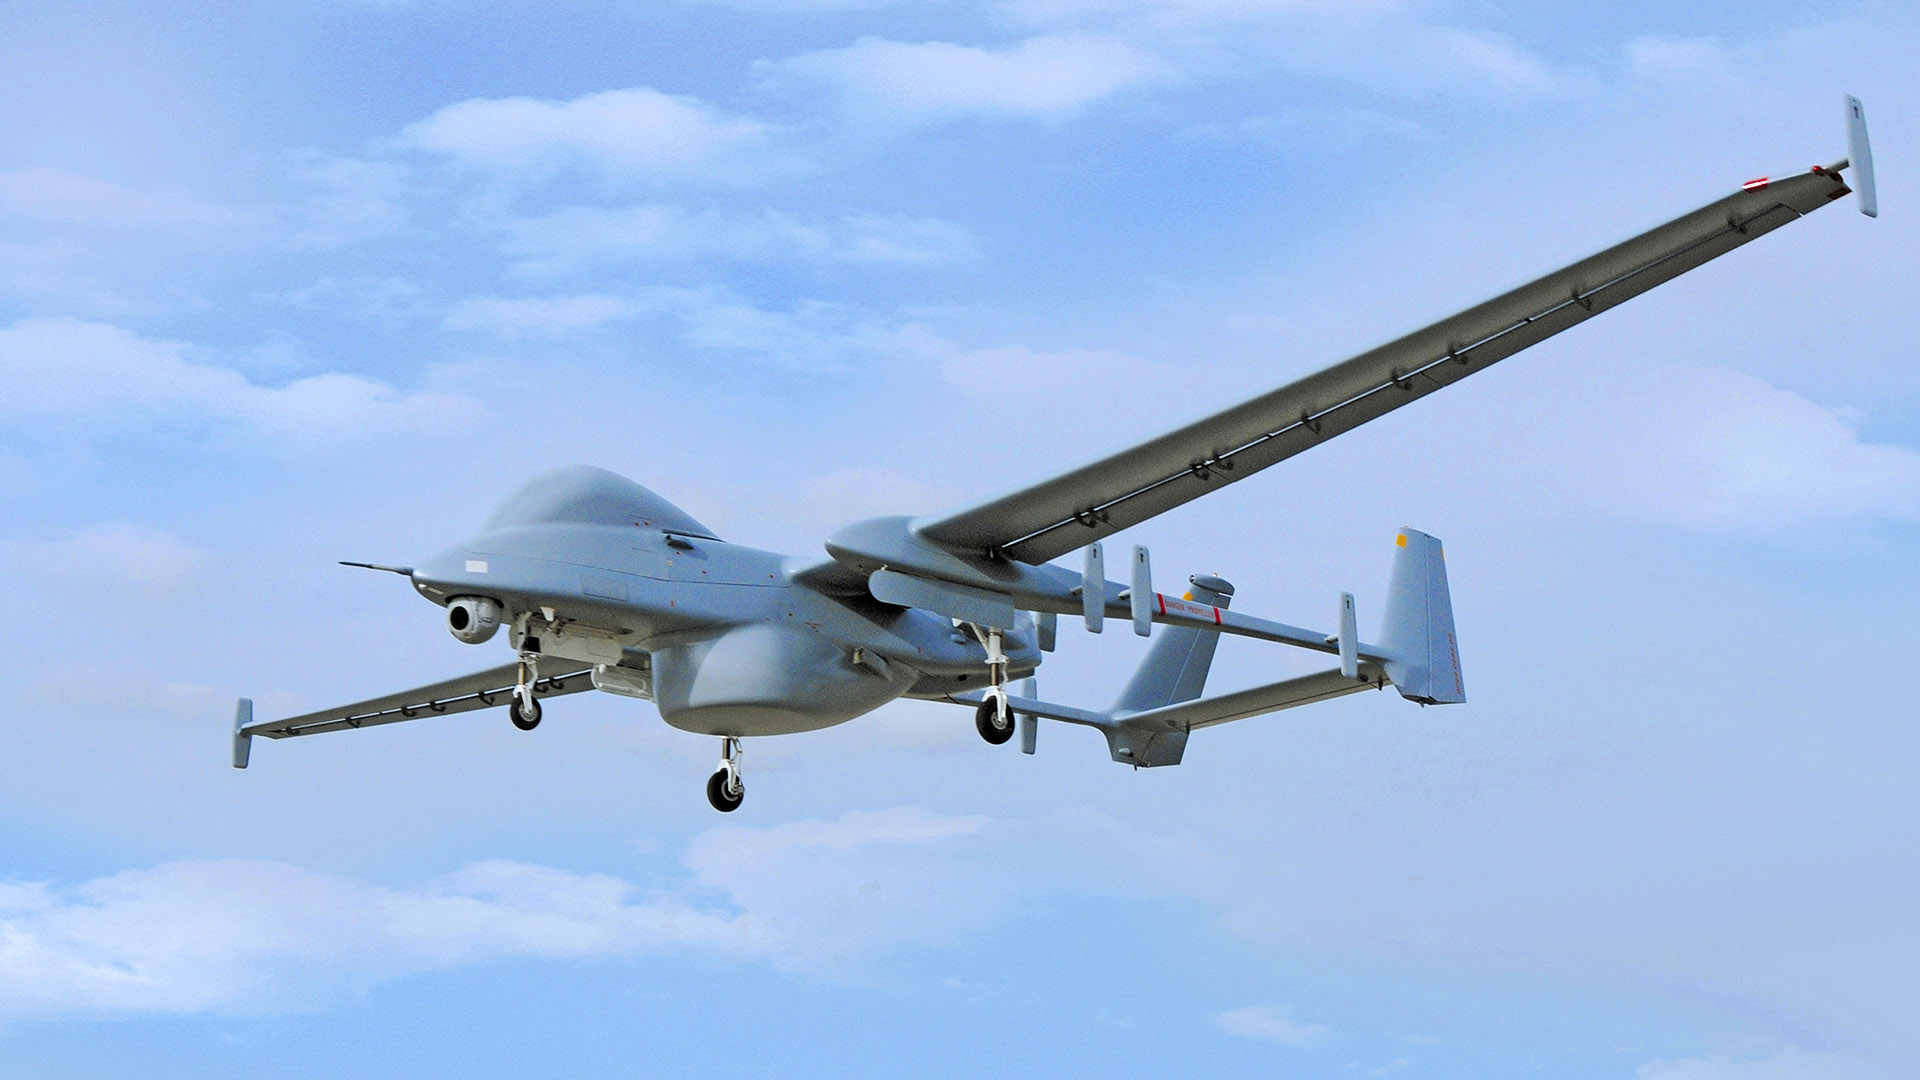 48 παραβιάσεις του εναέριου χώρου στο Αιγαίο από 4 τουρκικά drones